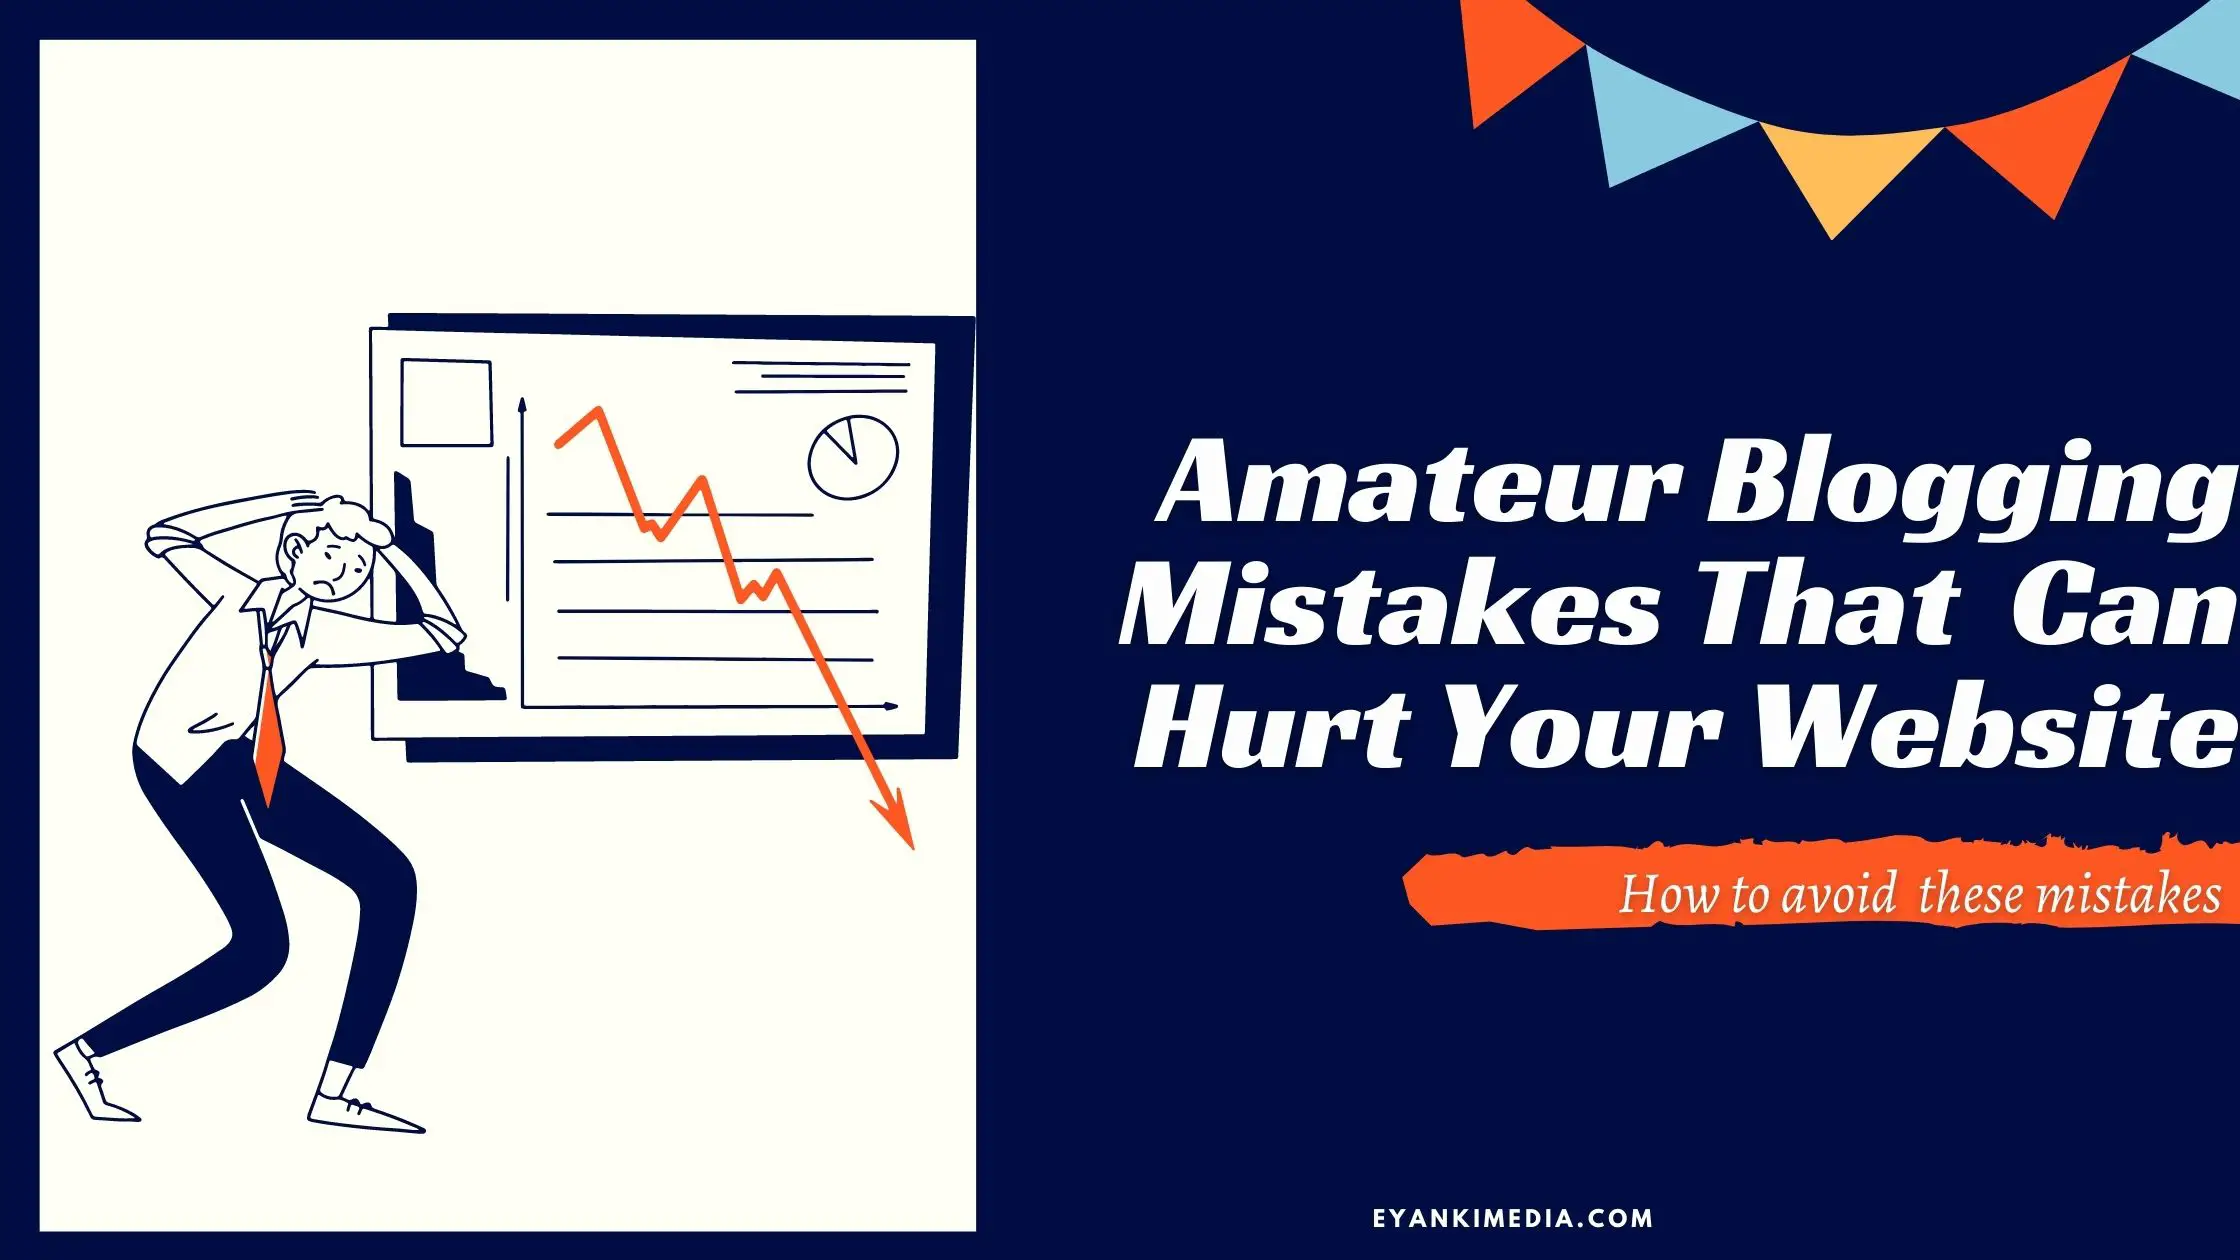 Amateur Blogging Mistakes